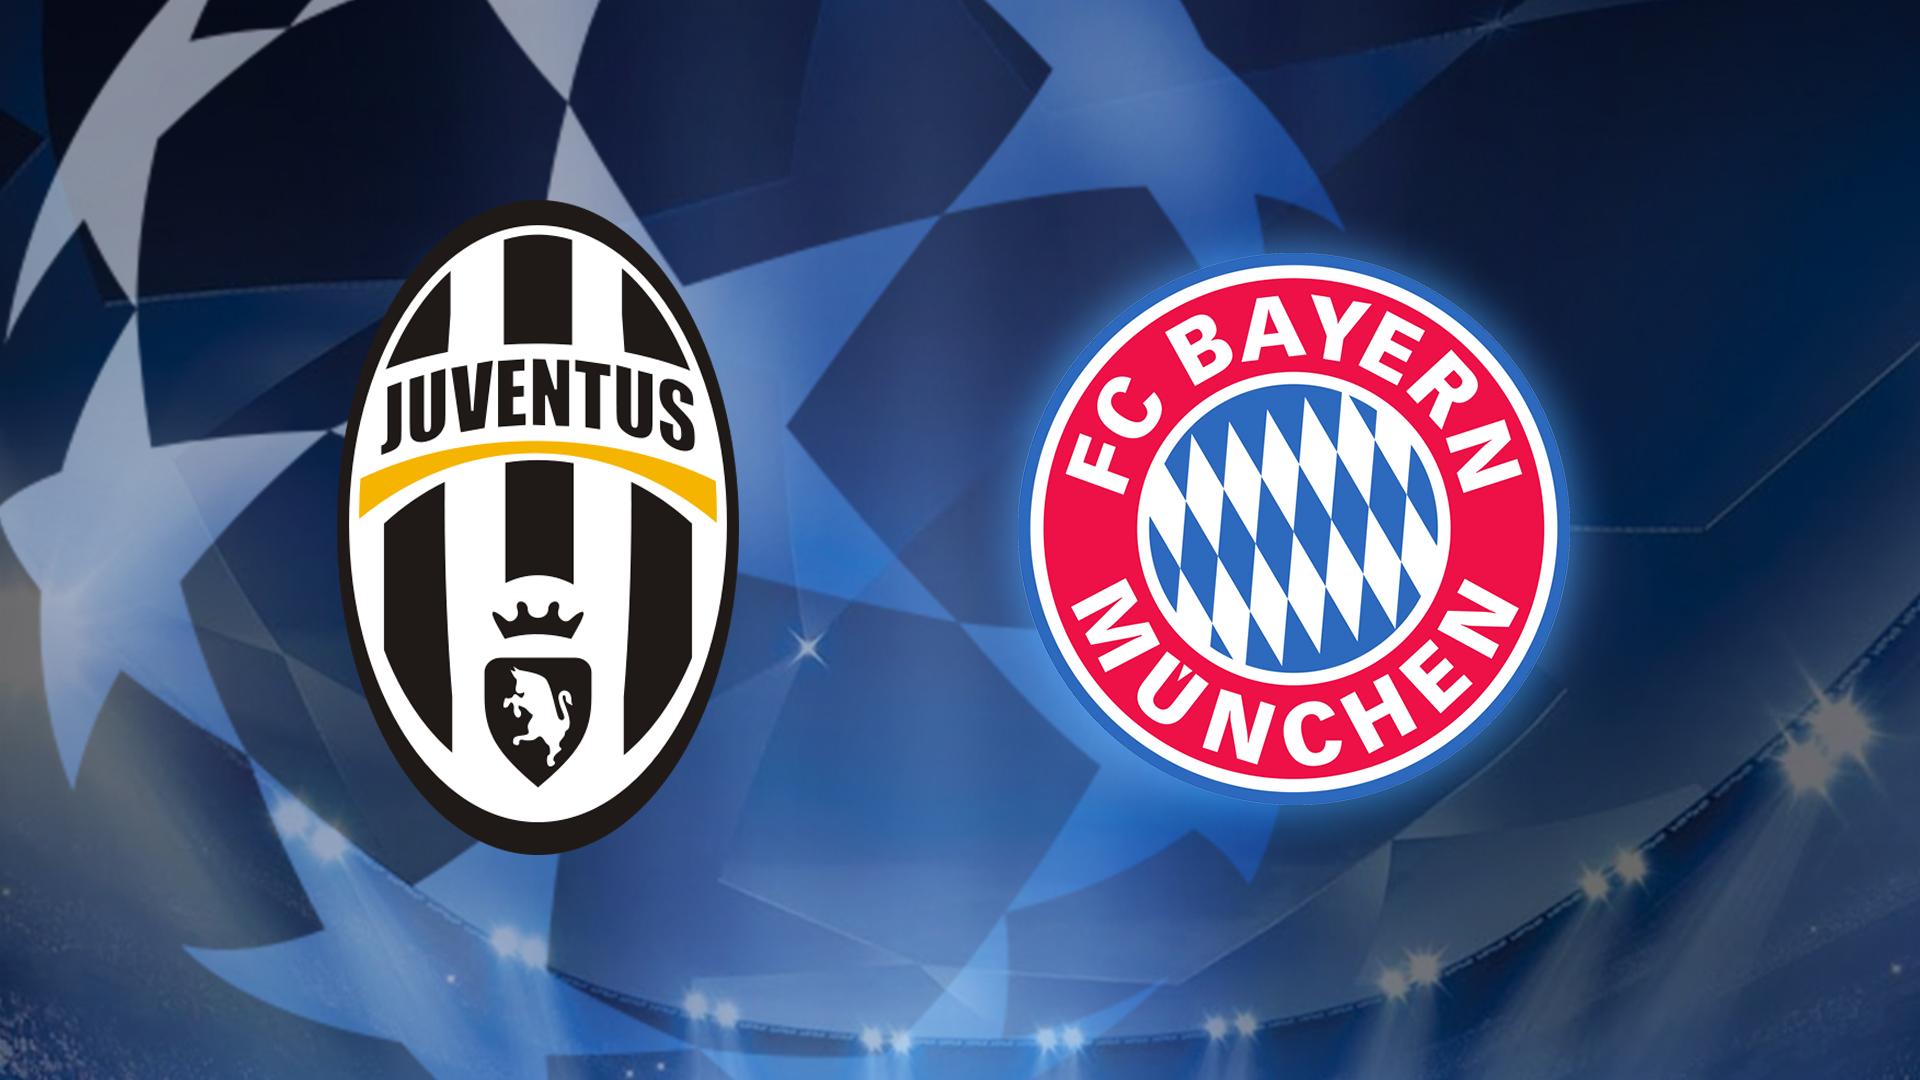 Juventus Turin Empfangt Den Fc Bayern Munchen Br24